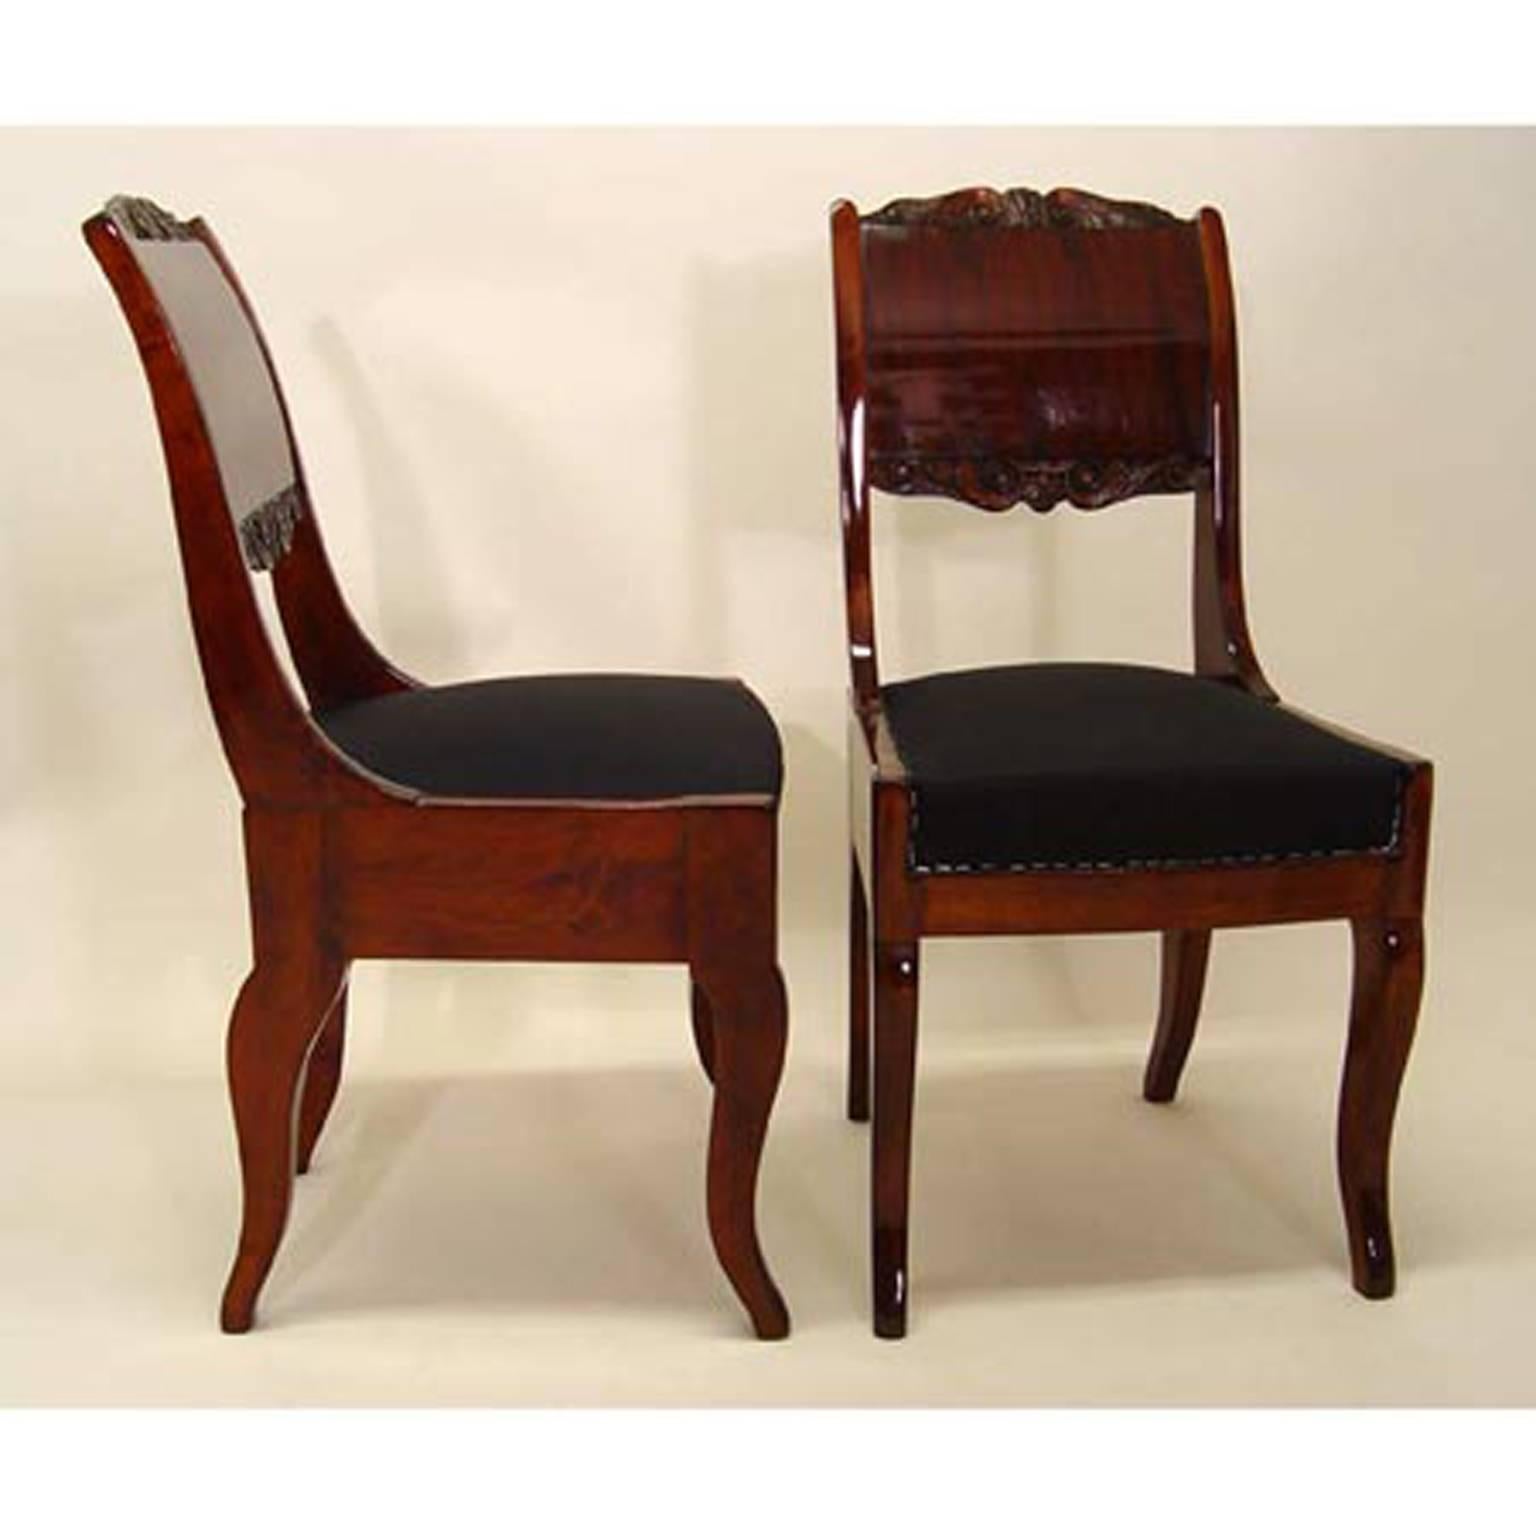 European Biedermeier Dining Chairs, 19th Century